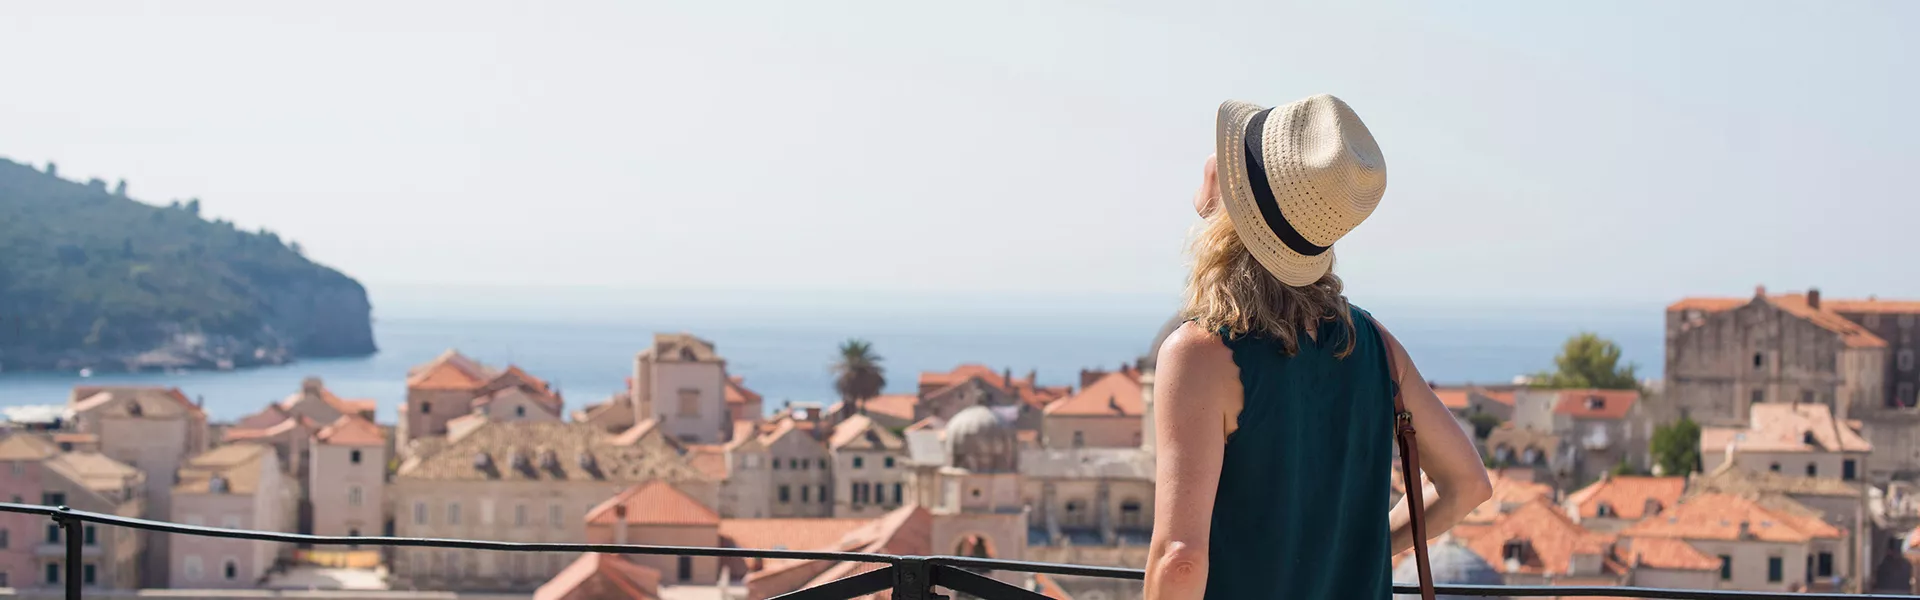 A woman admiring seaview in Dubrovnik, Croatia